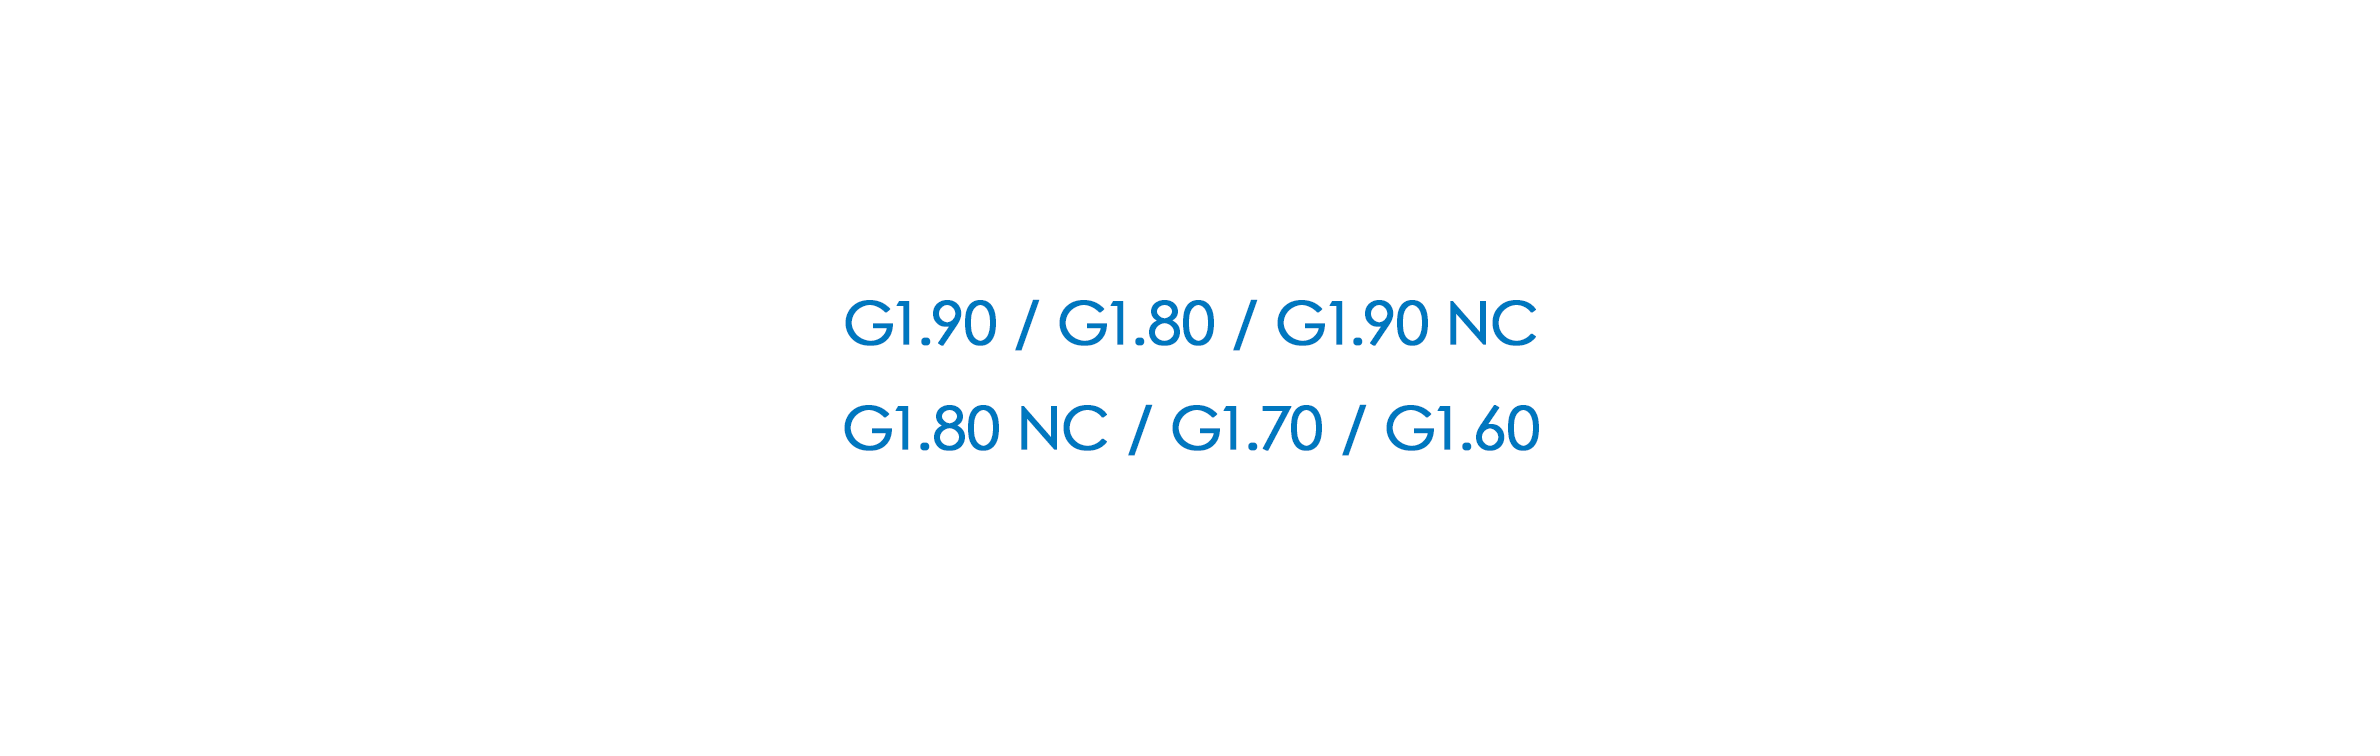 G1.90 / G1.80 / G1.90 NC / G1.80 NC / G1.70 / G1.60